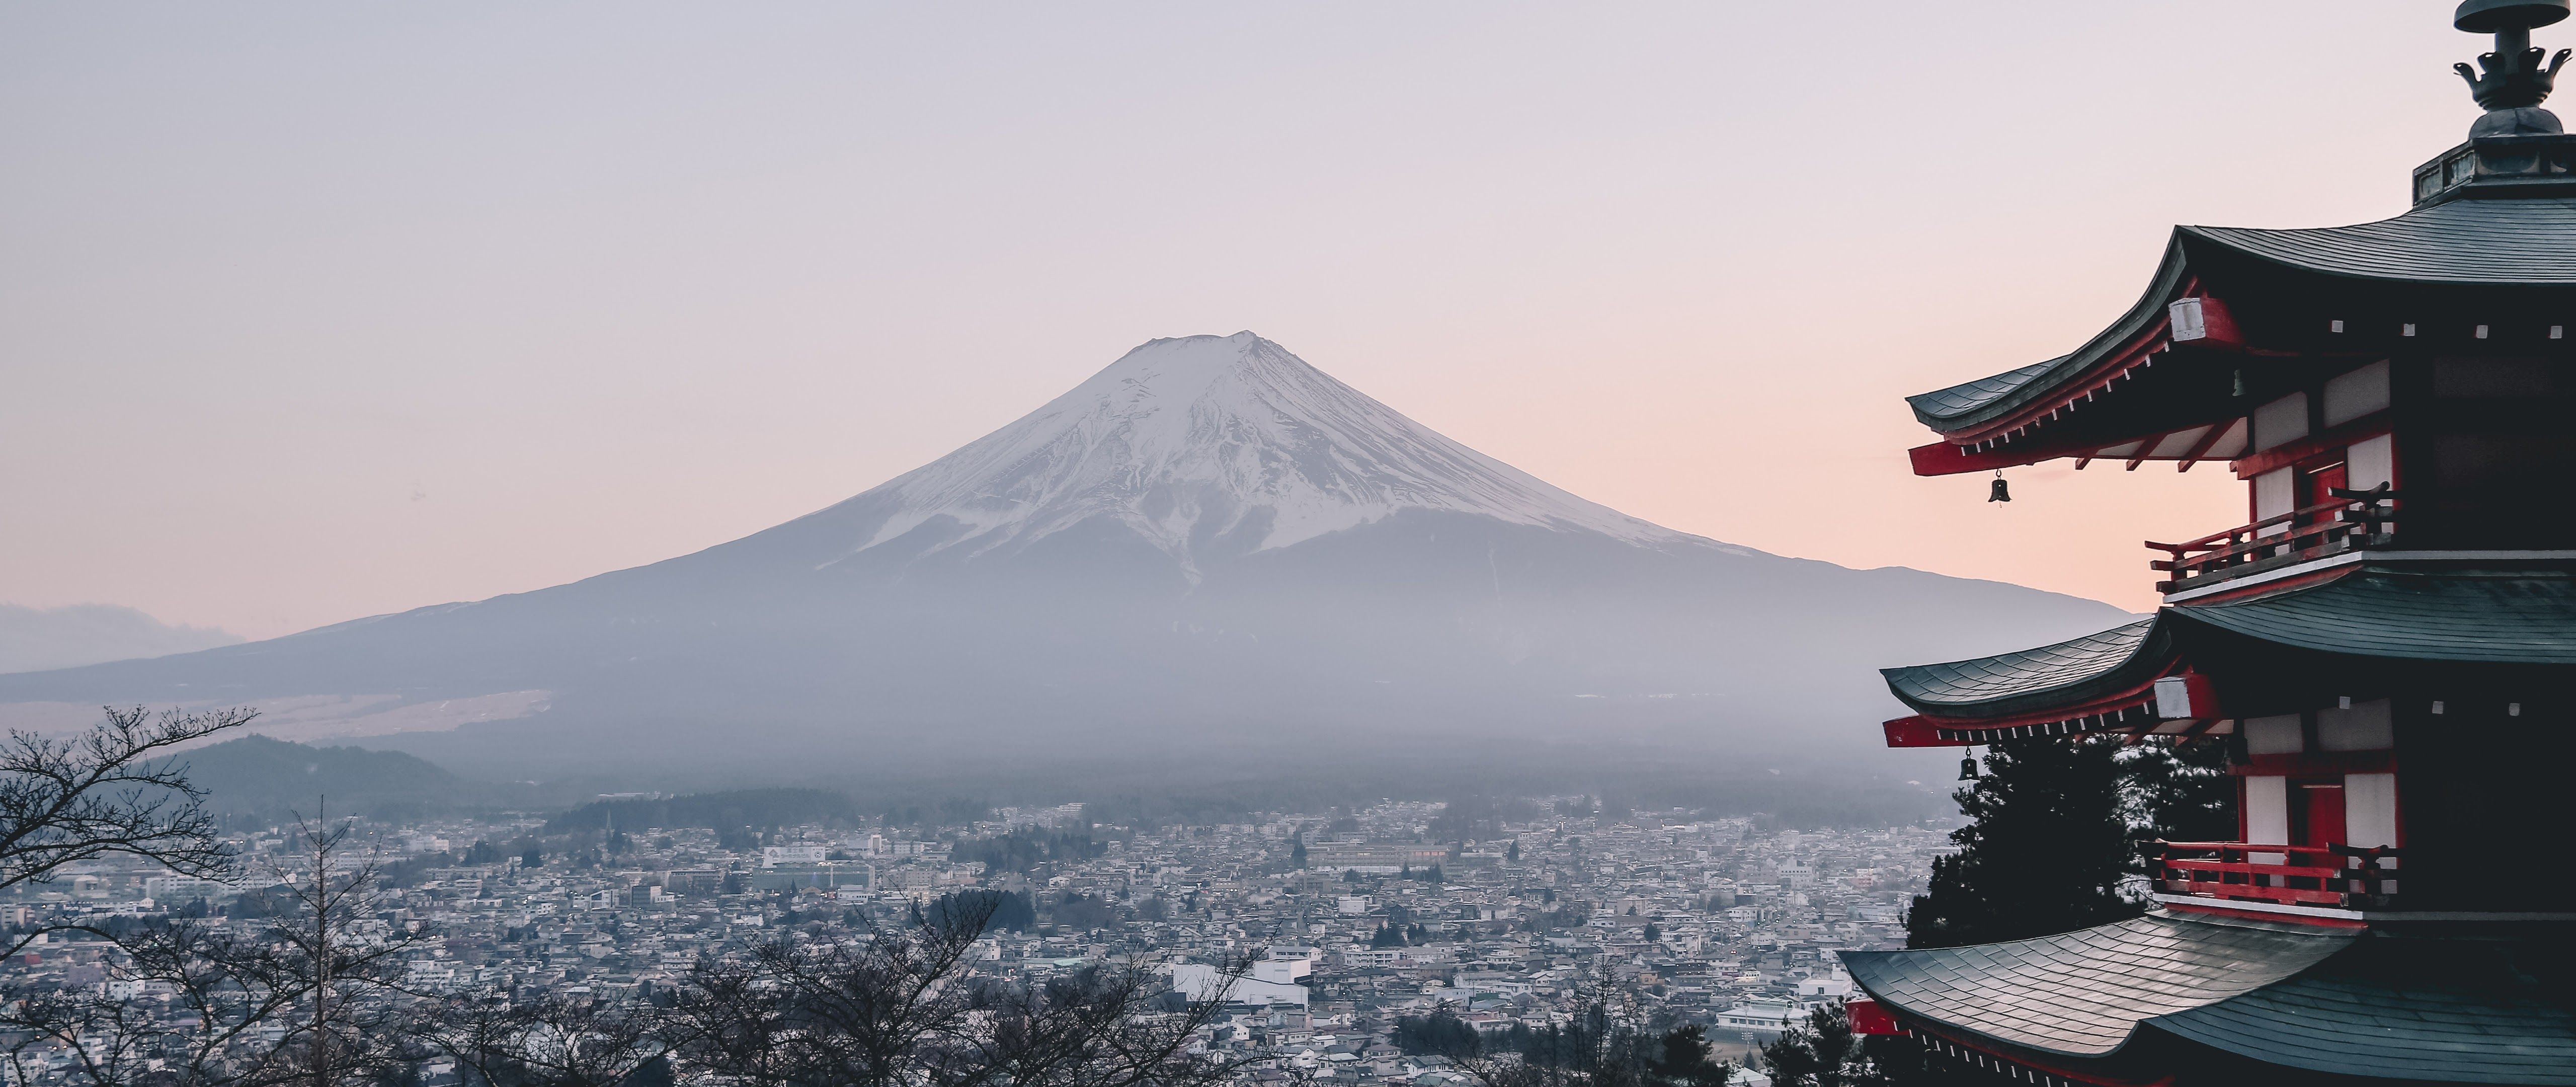 Mount Fuji City Japan Landscape Scenery 8K Wallpapers